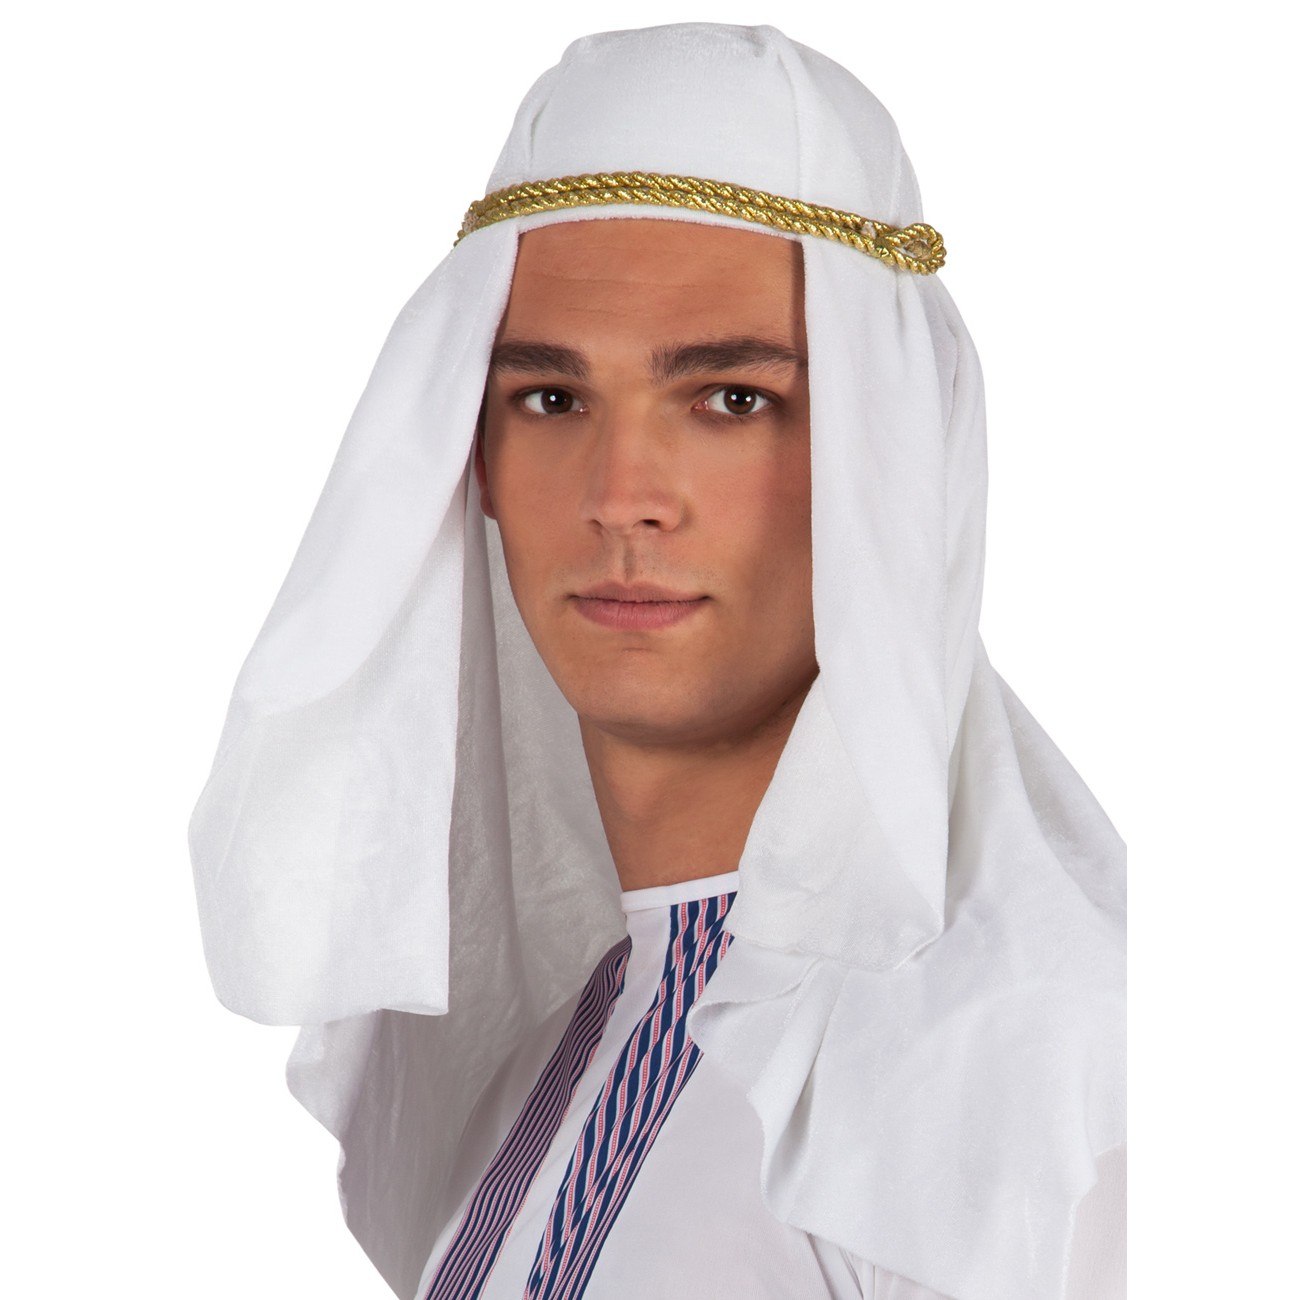 Платок на голову мужчине. Куфия шейха. Куфия головной убор. Арабский головной убор куфия. Восточный принц Бексолан.